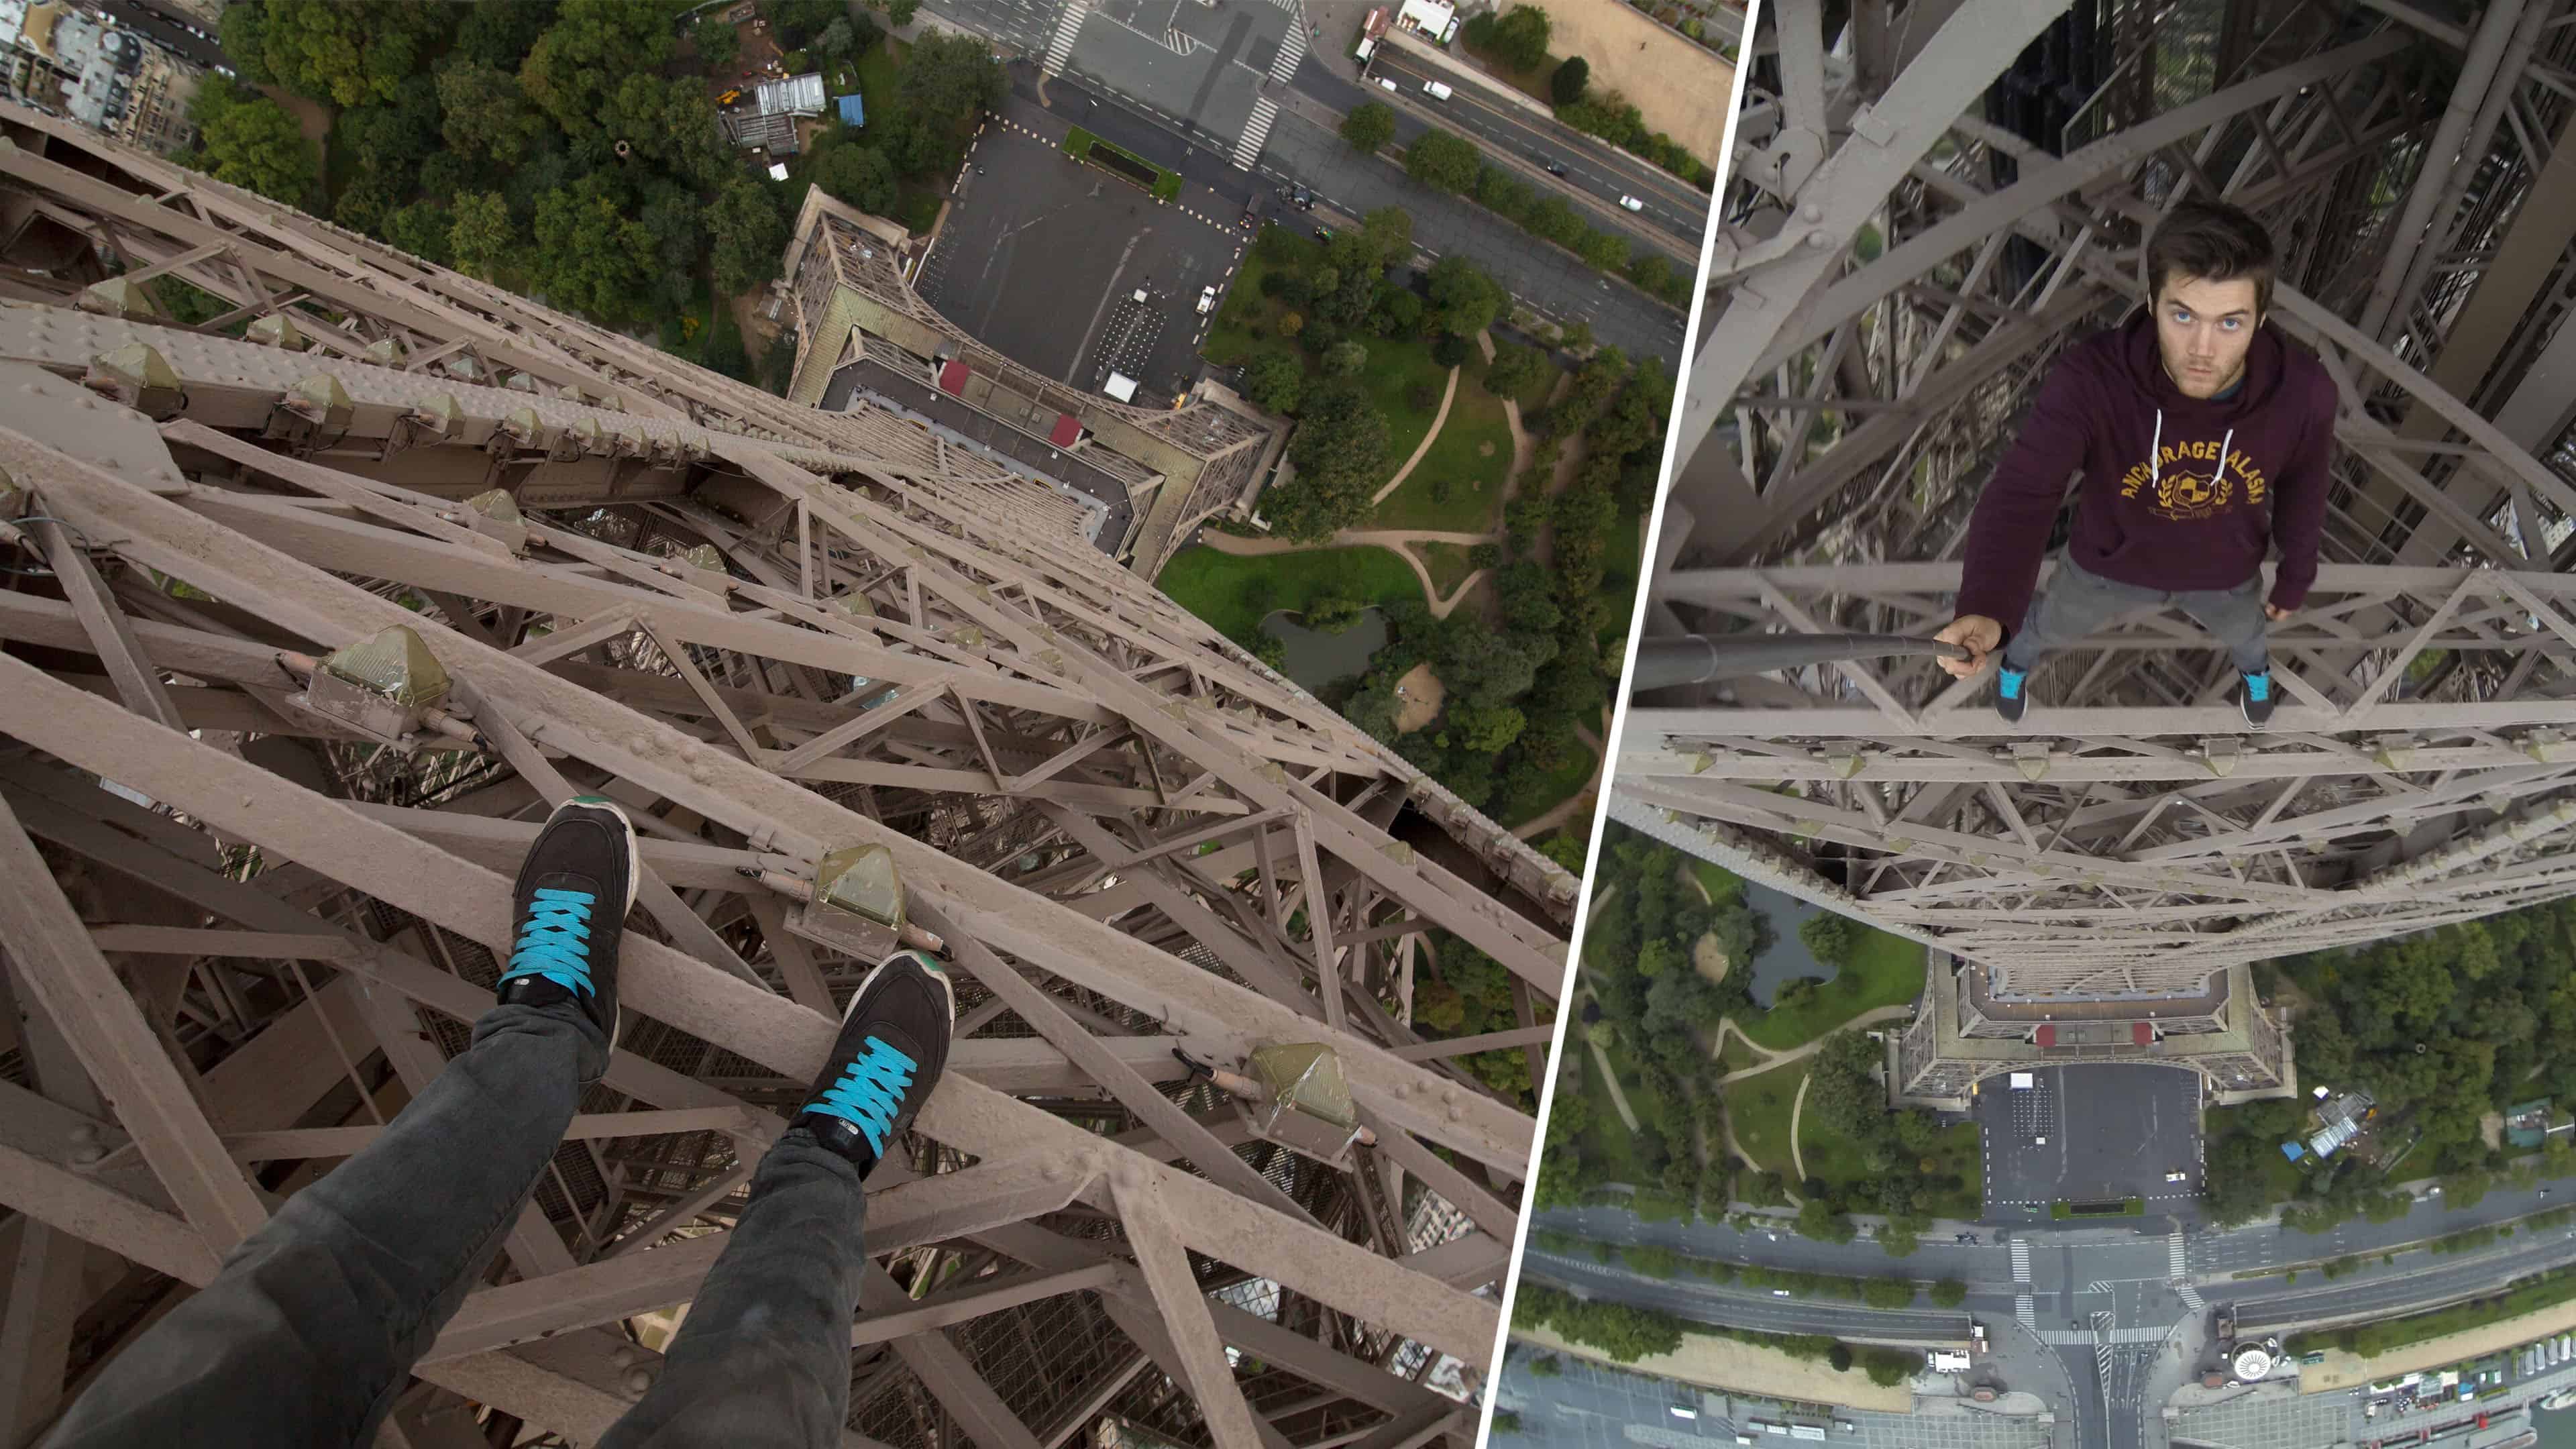 Klatre opp Eiffeltårnet uten sikkerhetstiltak